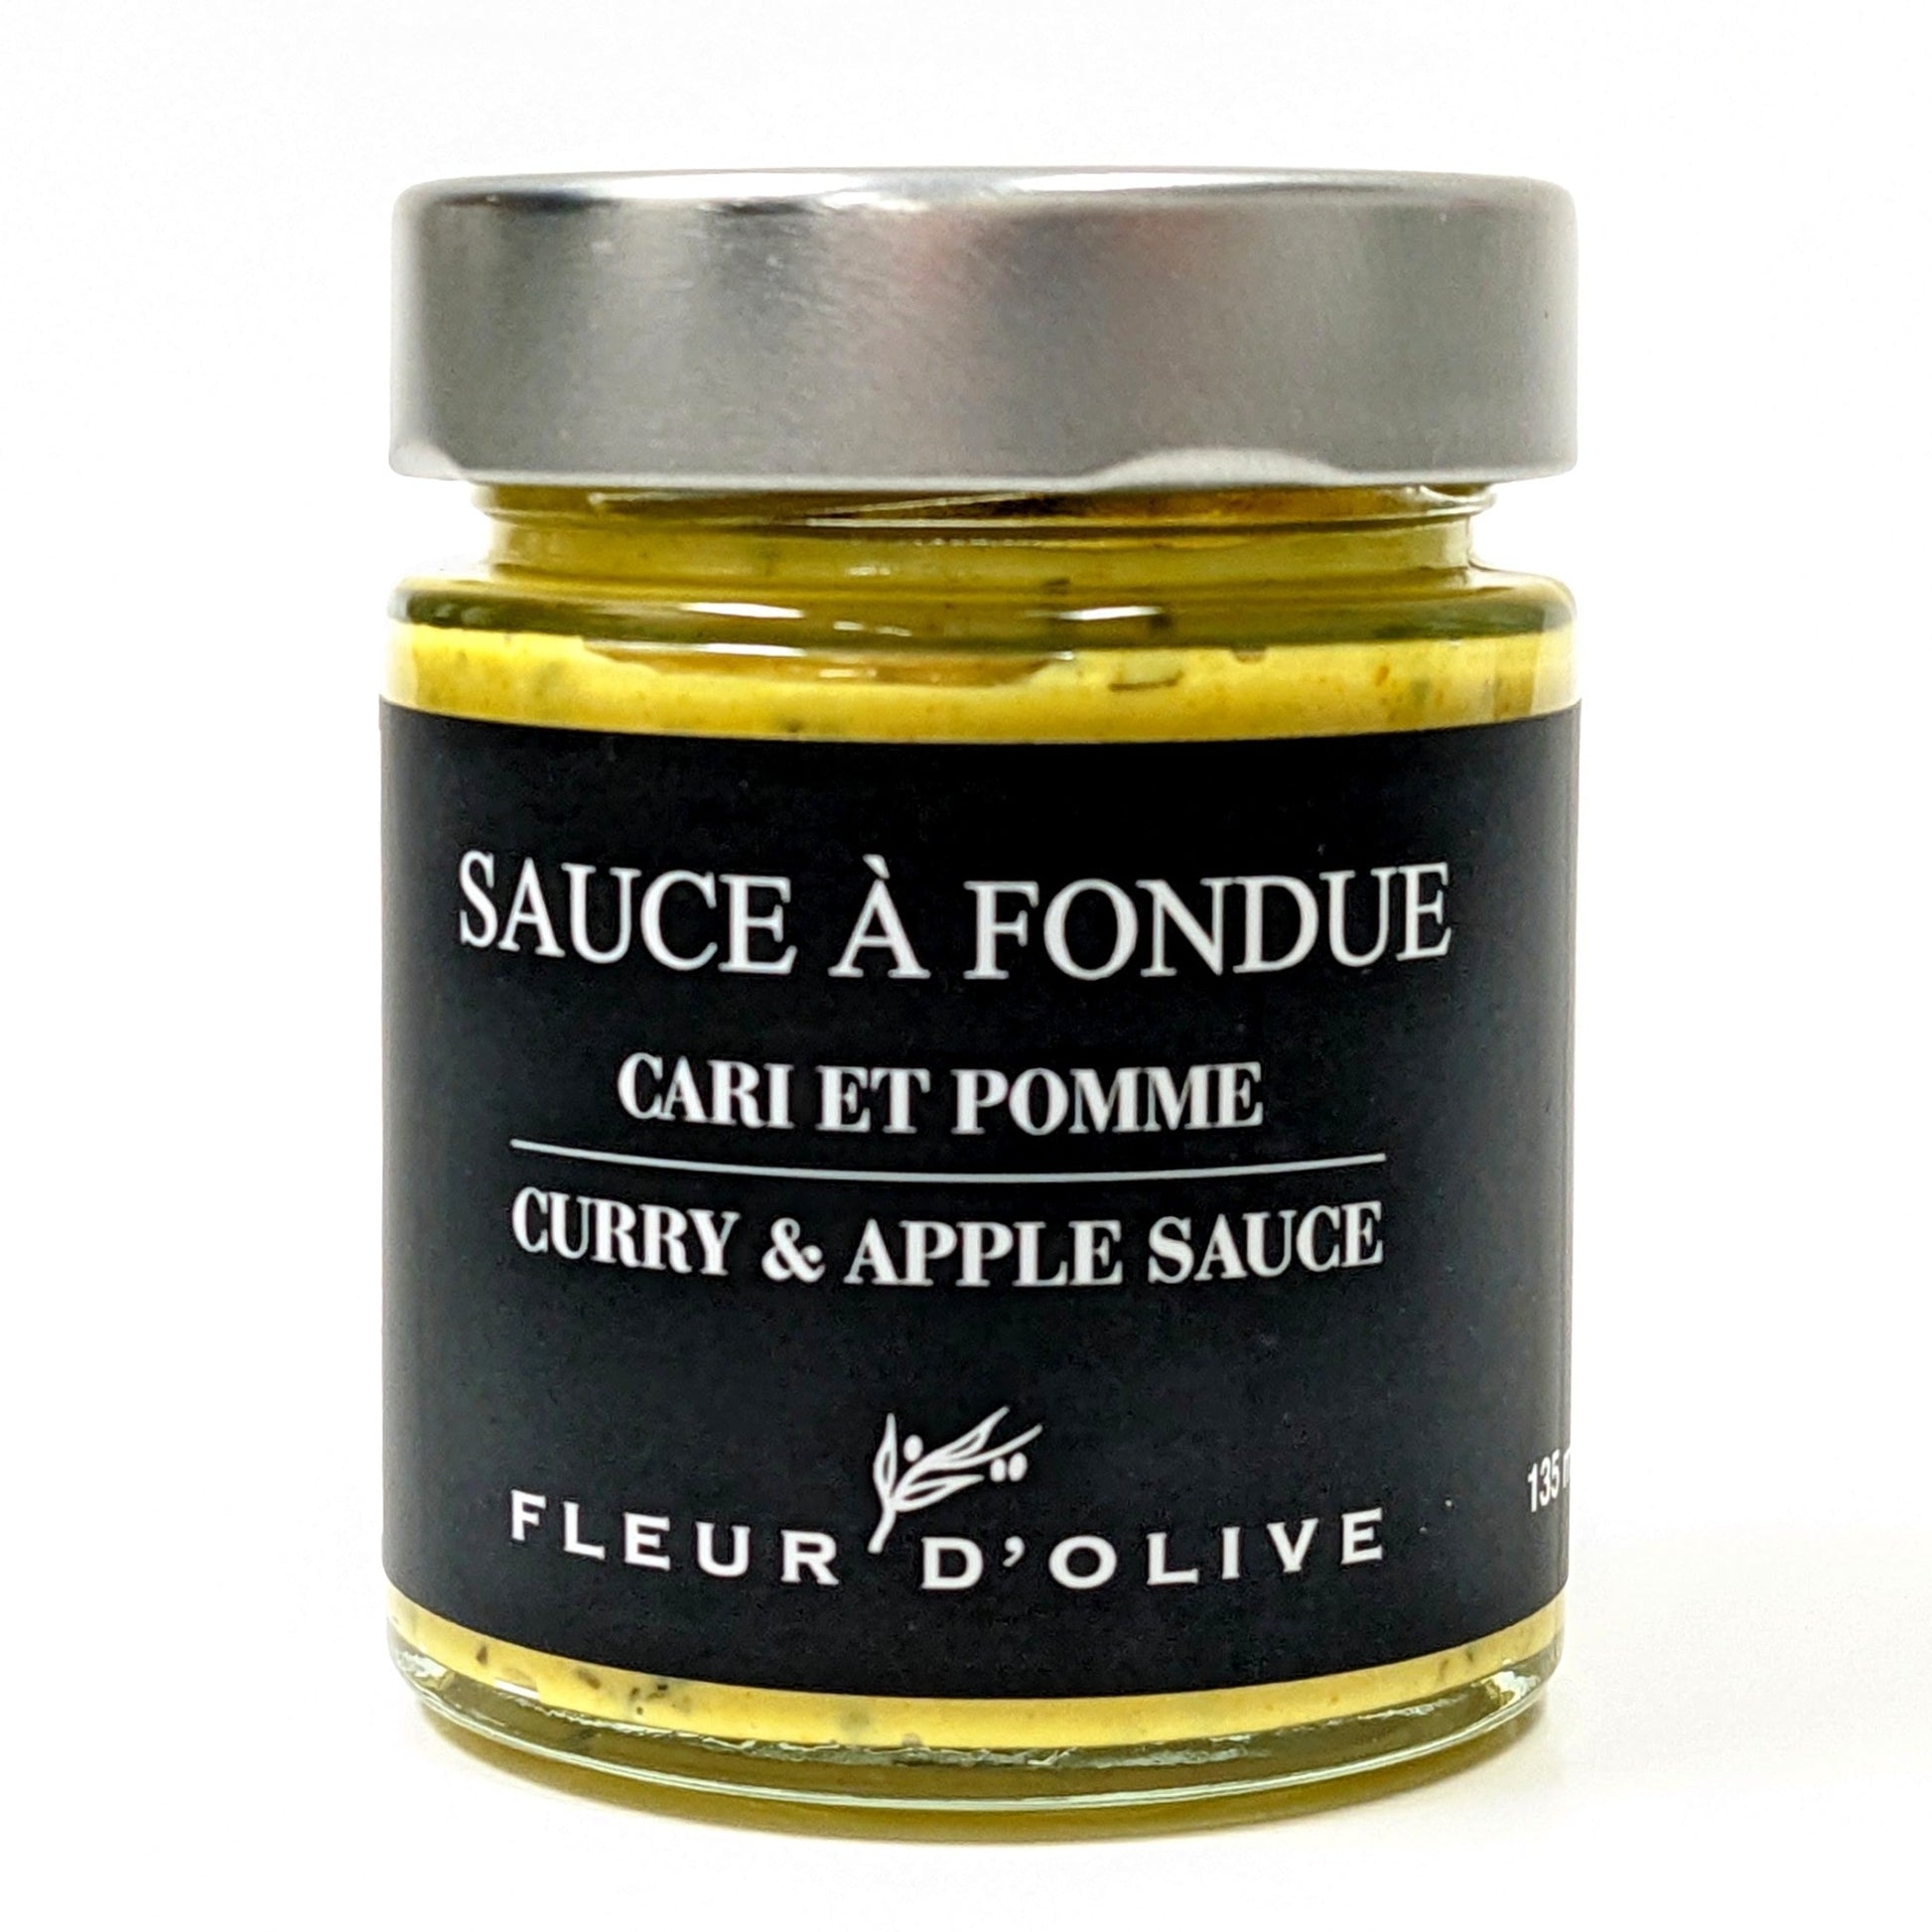 Sauce à fondue Cari et pomme - Fleur d'Olive